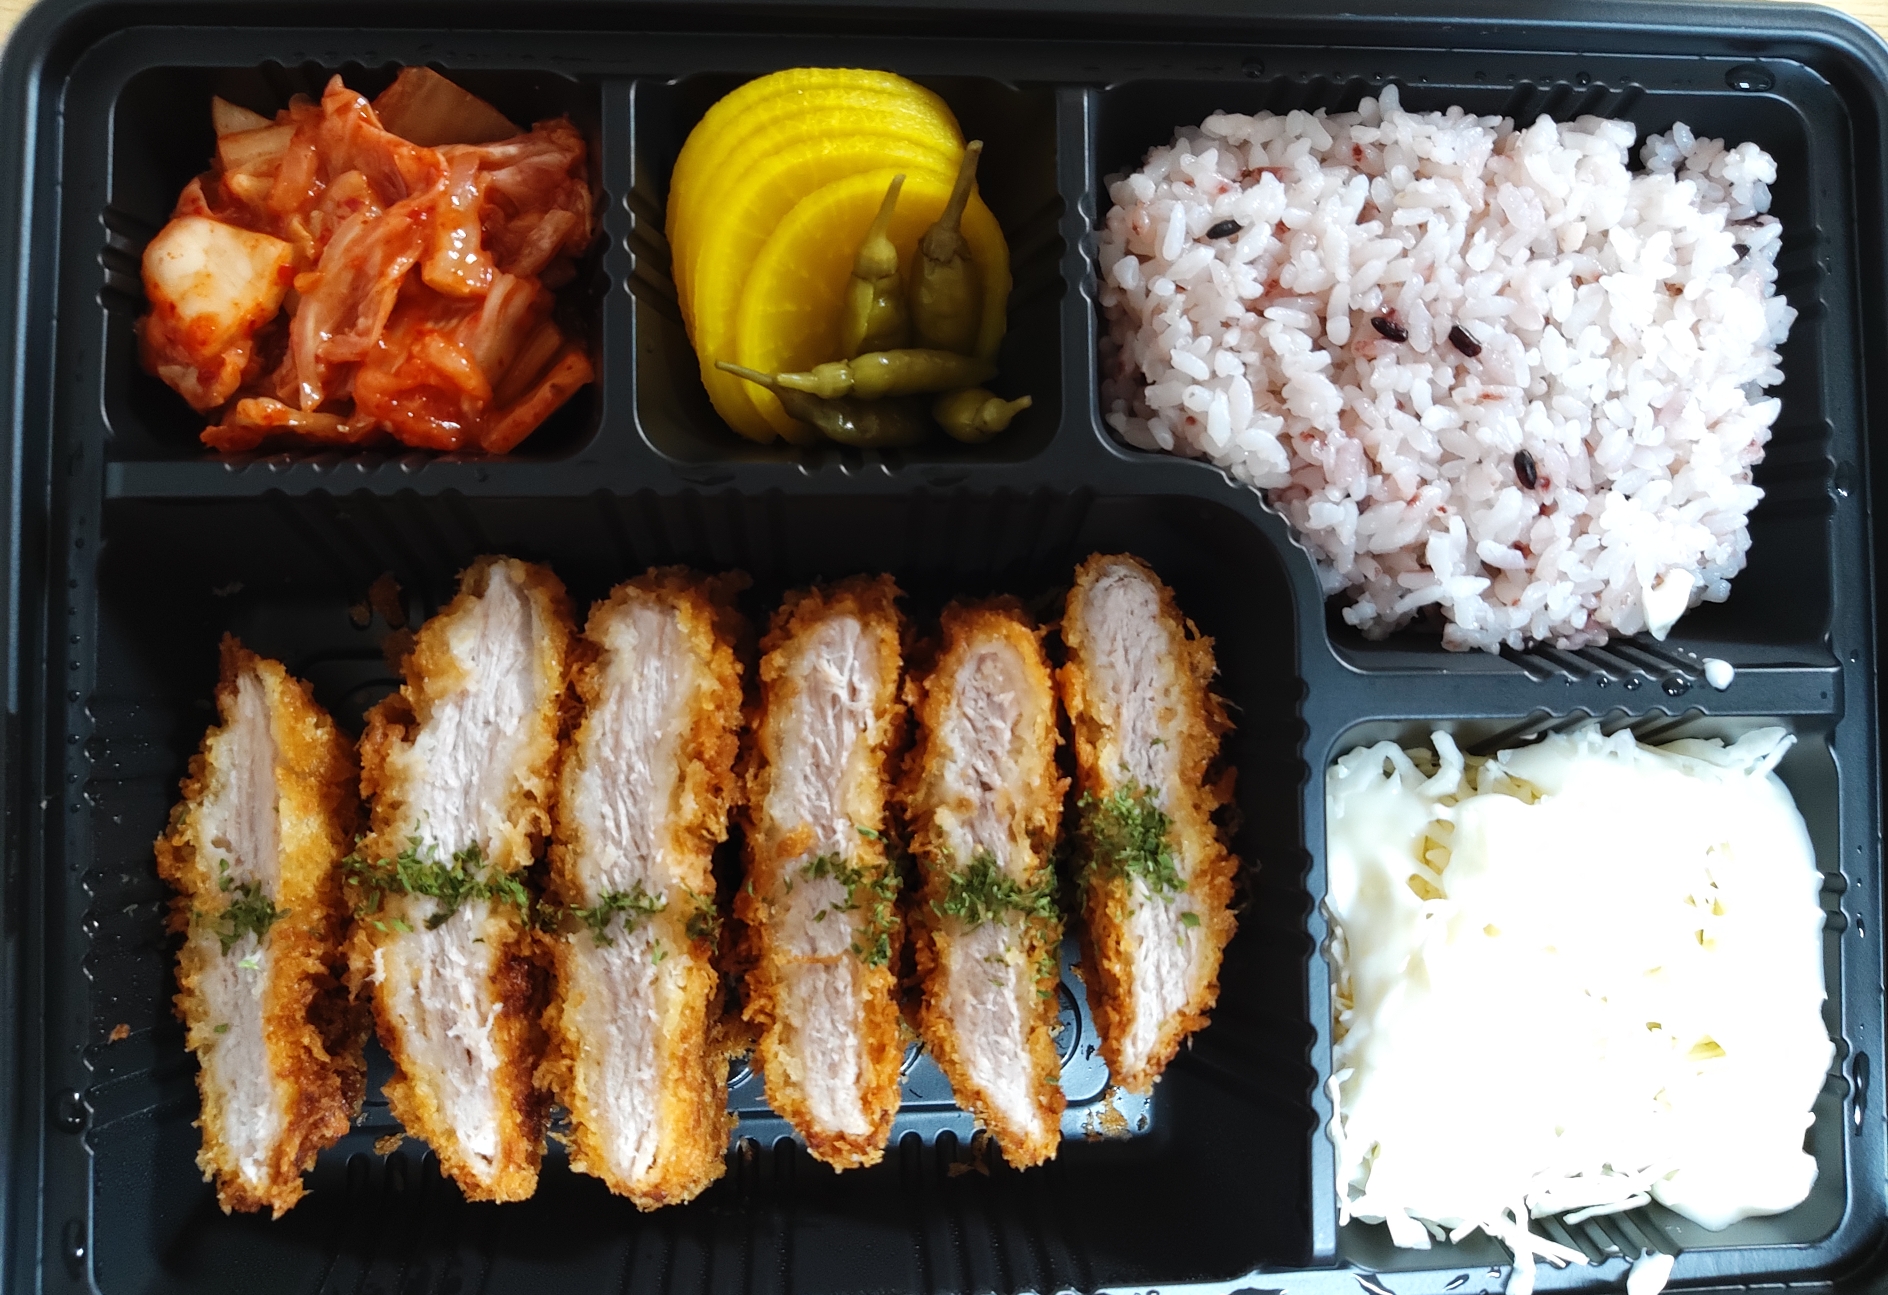 등심돈까스와 밥, 김치, 단무지, 양배추 샐러드